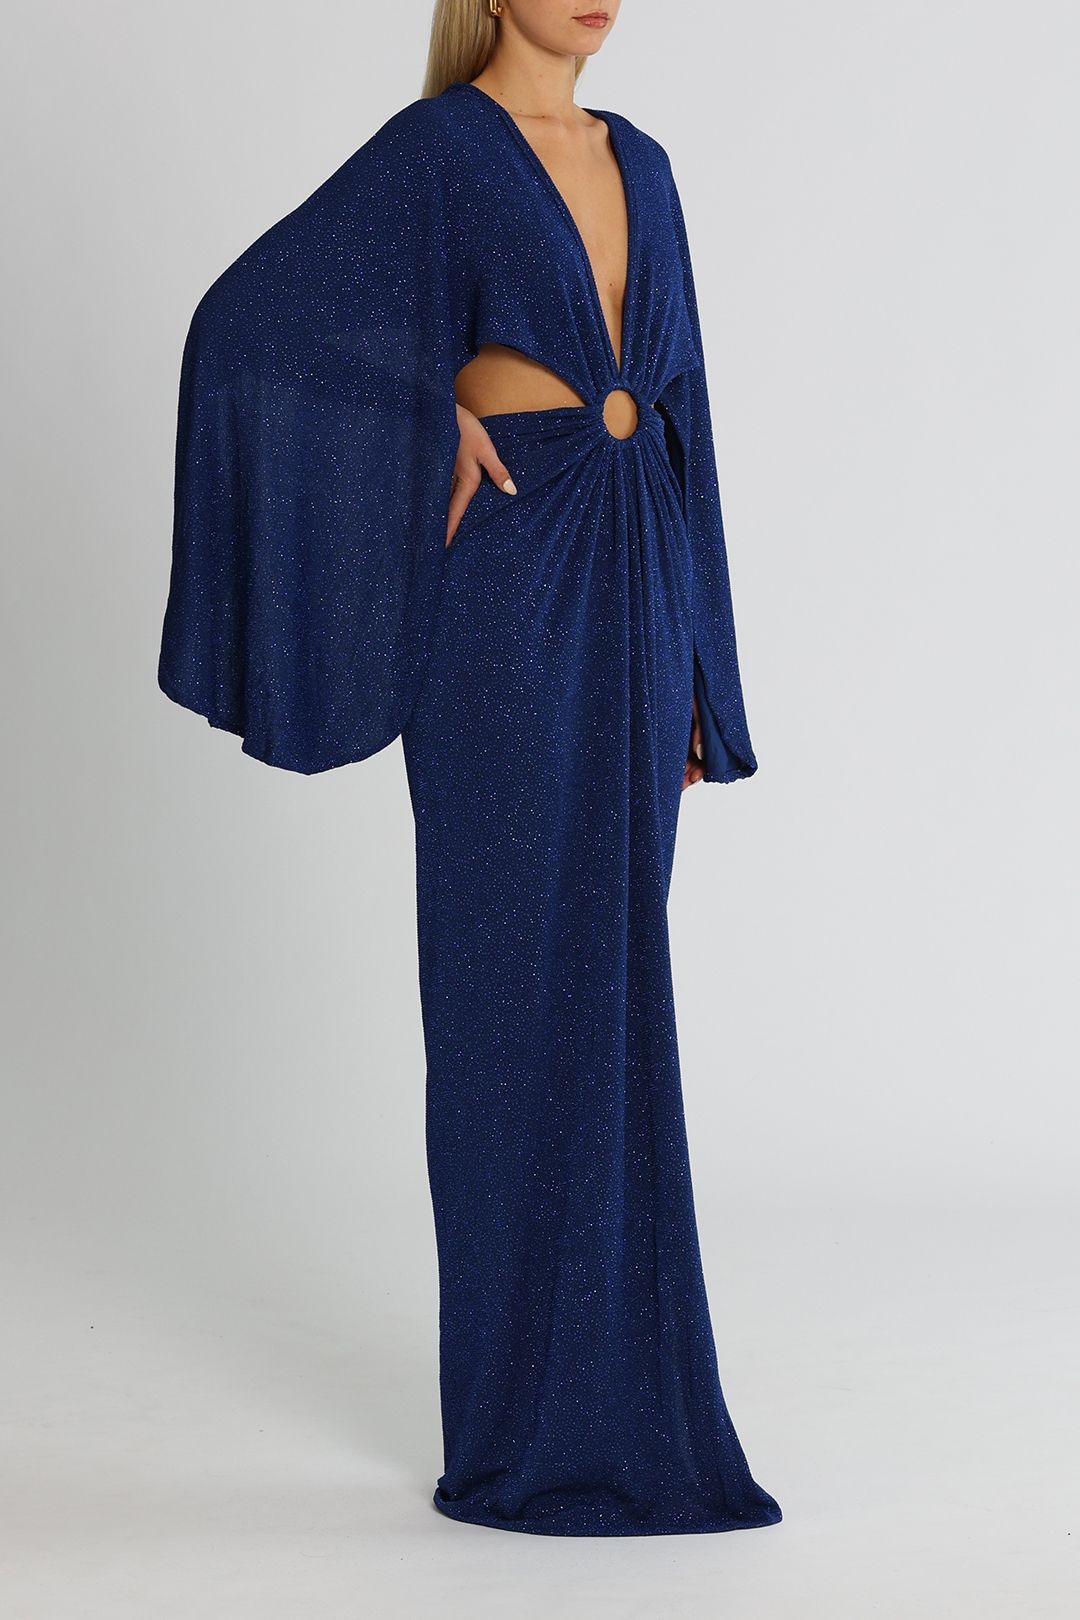 J. Angelique Selena Gown Blue Sparkle Cutout